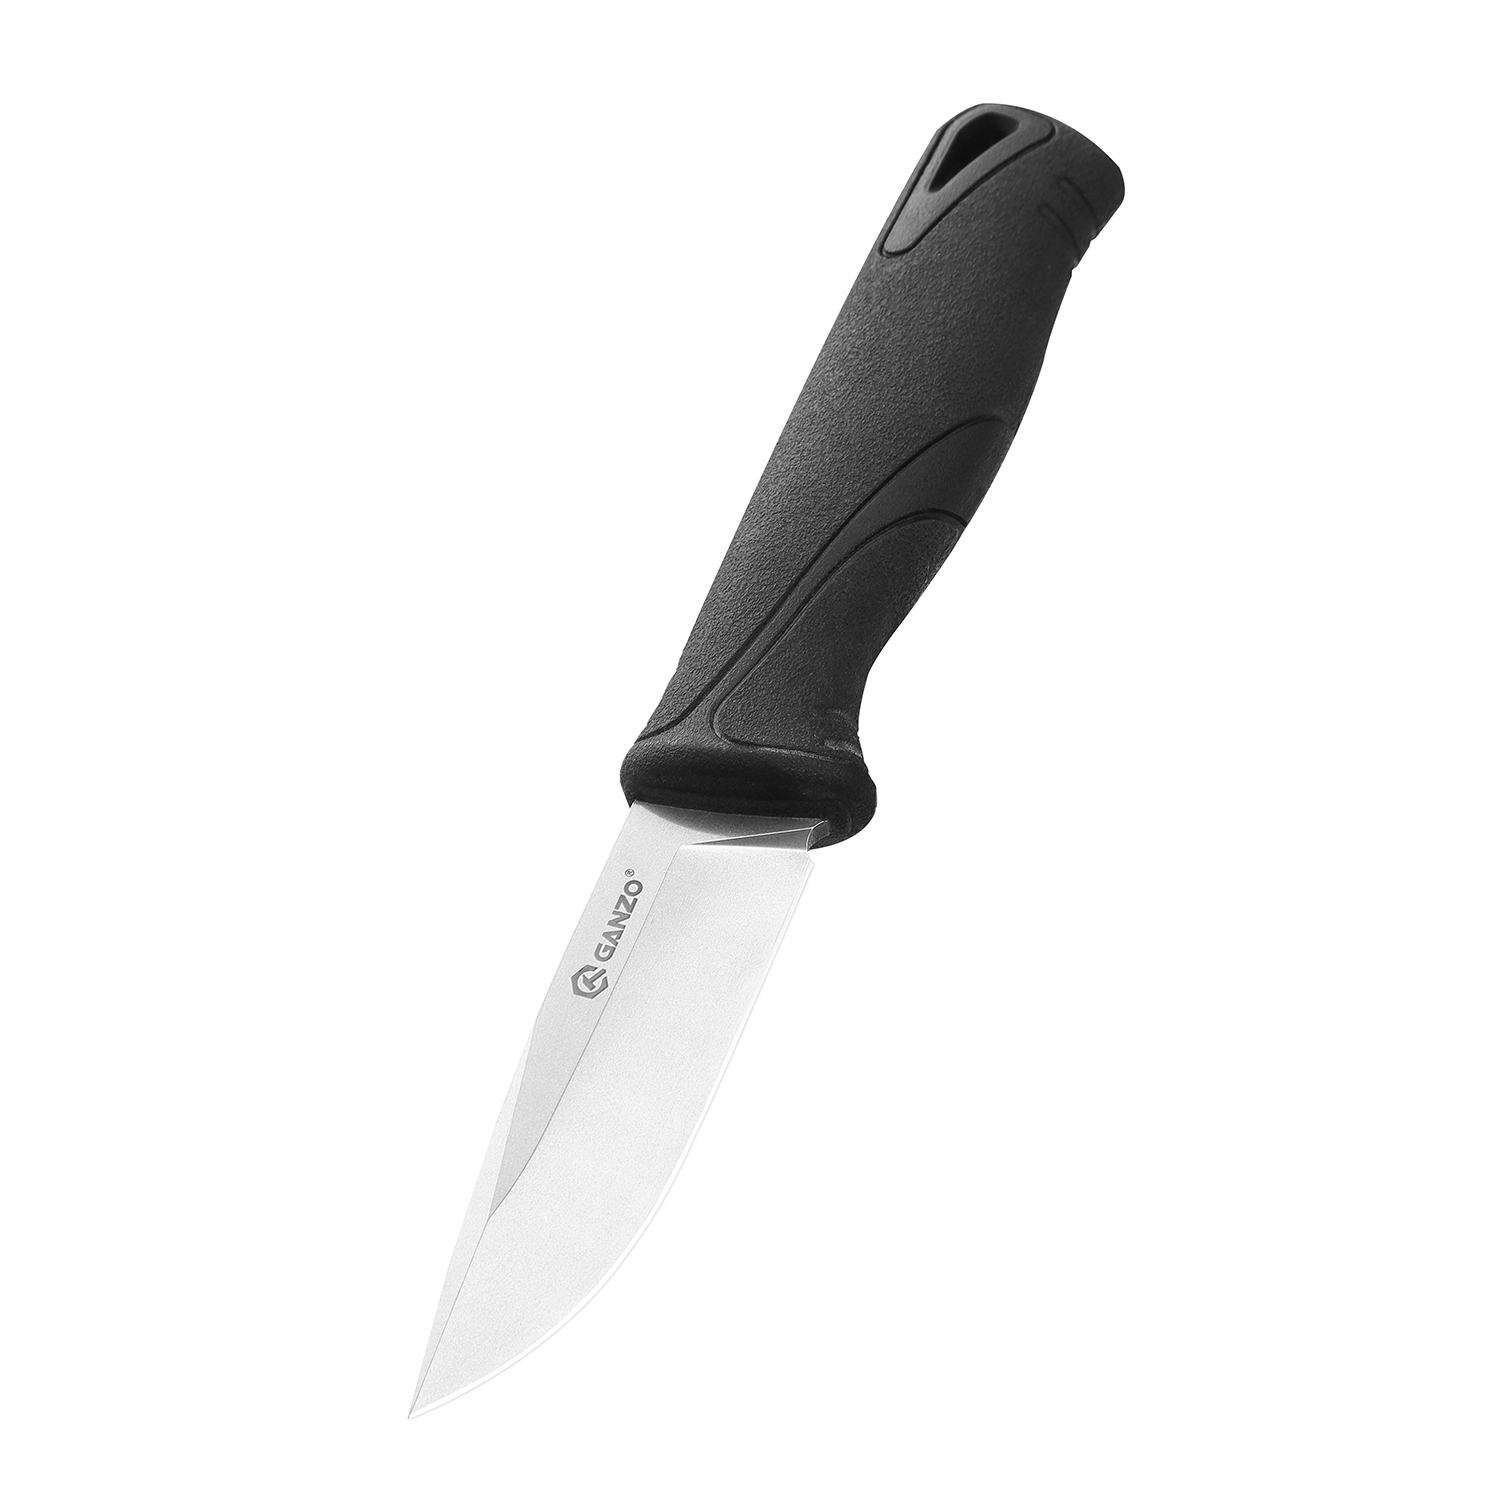 Нож Ganzo Fixed/Case, сталь 9Cr14Mov, рукоять прорезиненный пластик, черный